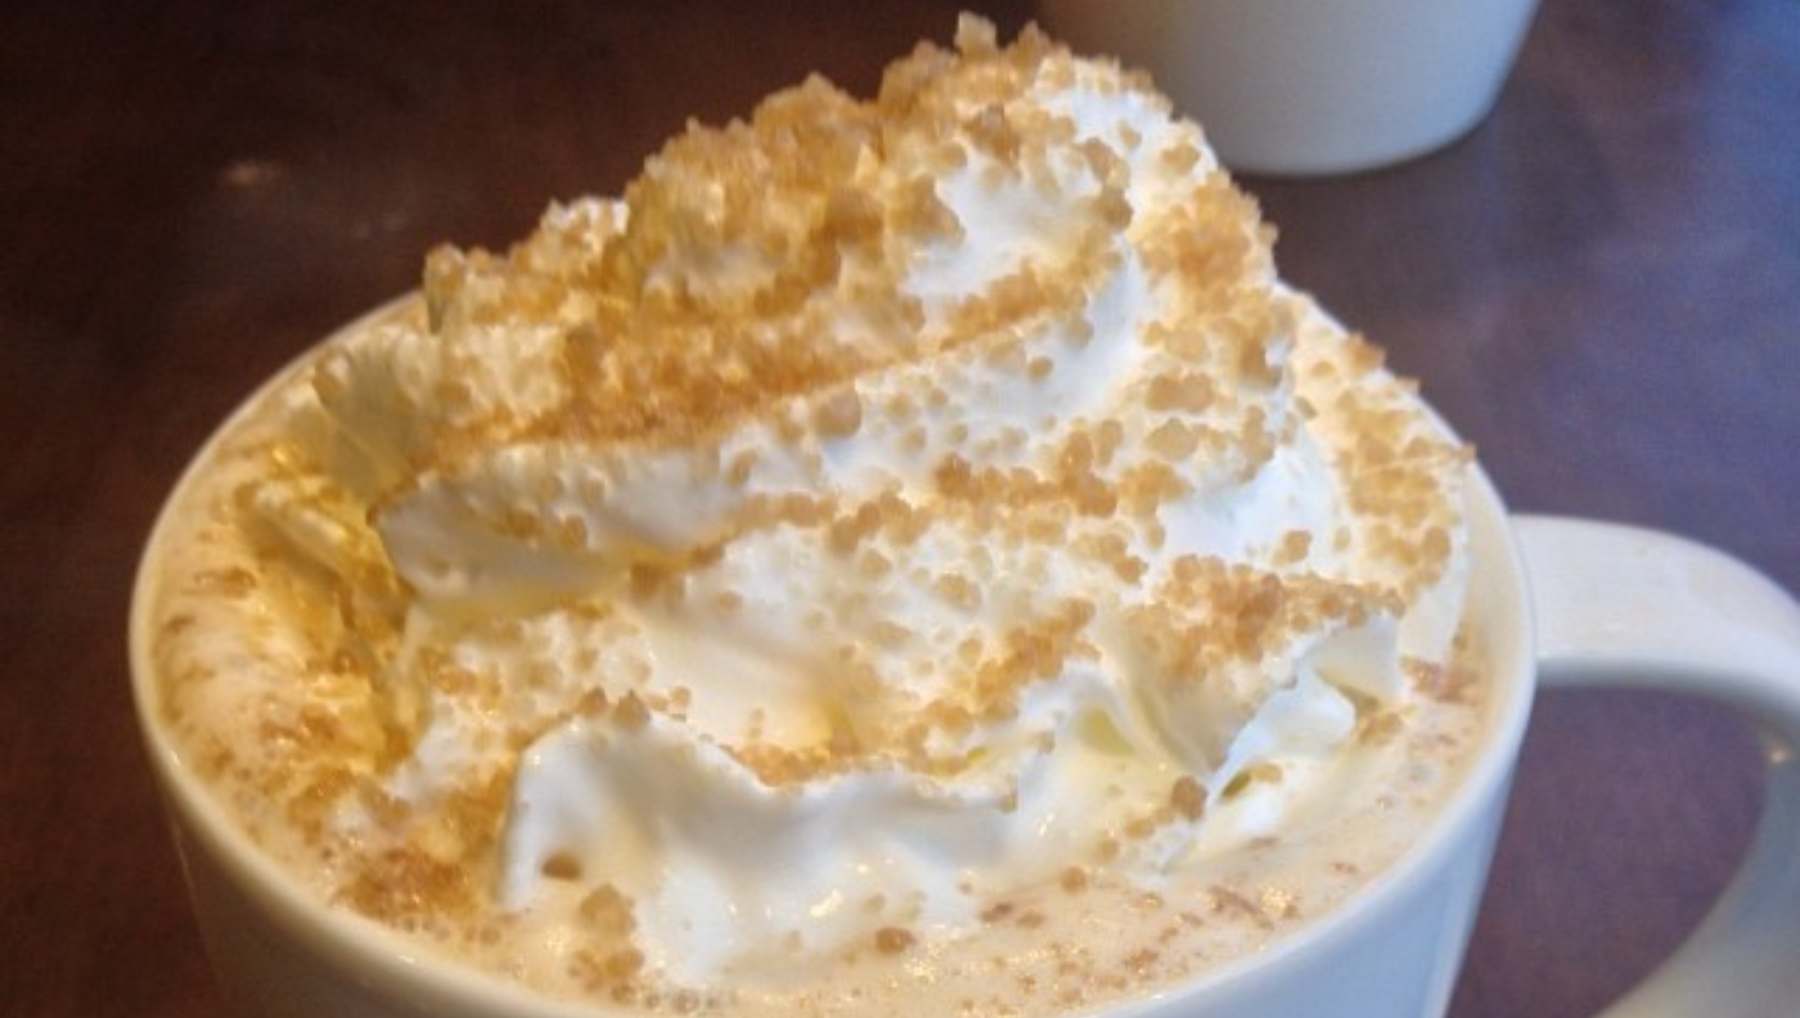 Haz tu delicioso Toffee Nut Latte al más estilo Starbucks: ¡una bebida irresistible! 4